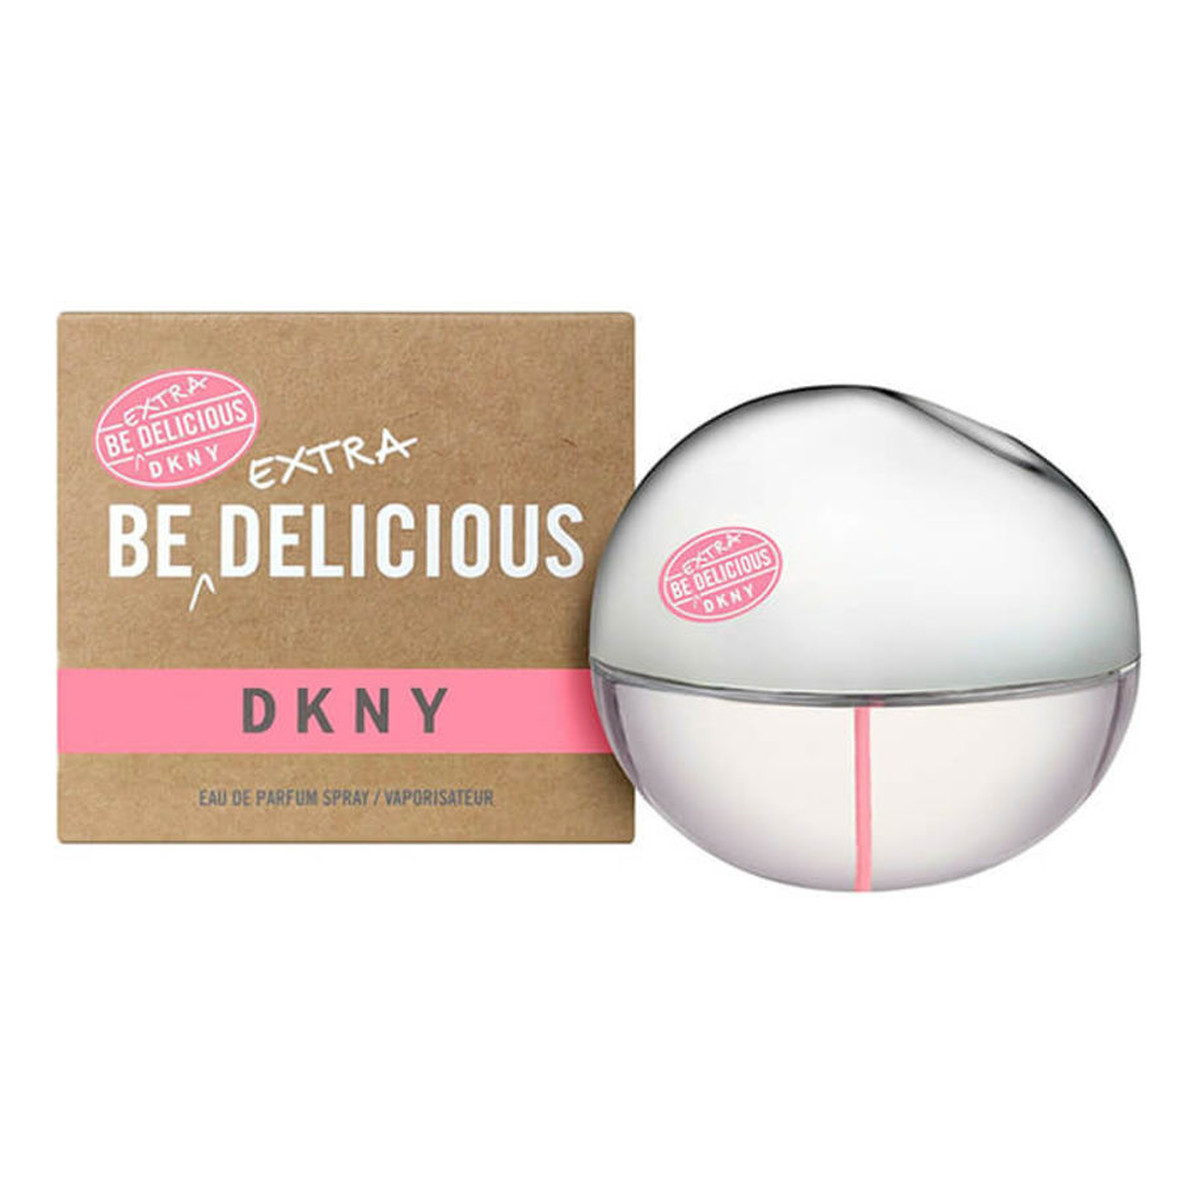 Donna Karan DKNY Be Delicious Extra Woda perfumowana spray 100ml